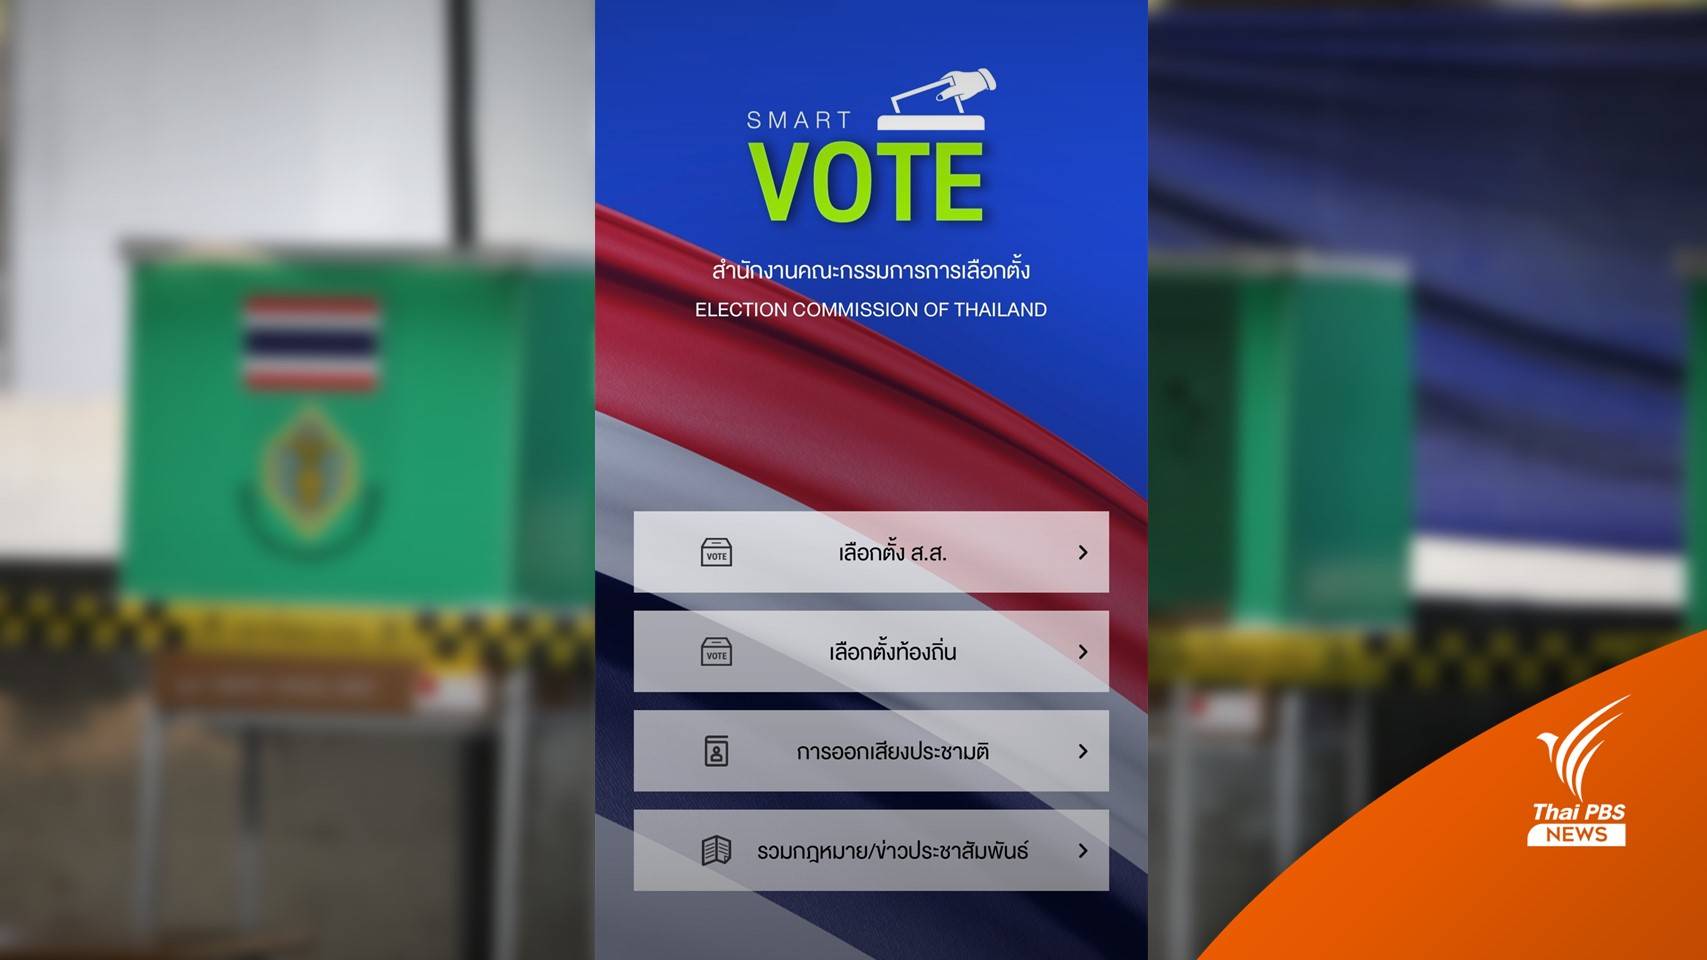 Smart Vote แอปฯ ลงทะเบียนเลือกตั้งล่วงหน้า ตั้งแต่วันนี้ - 9 เม.ย.66